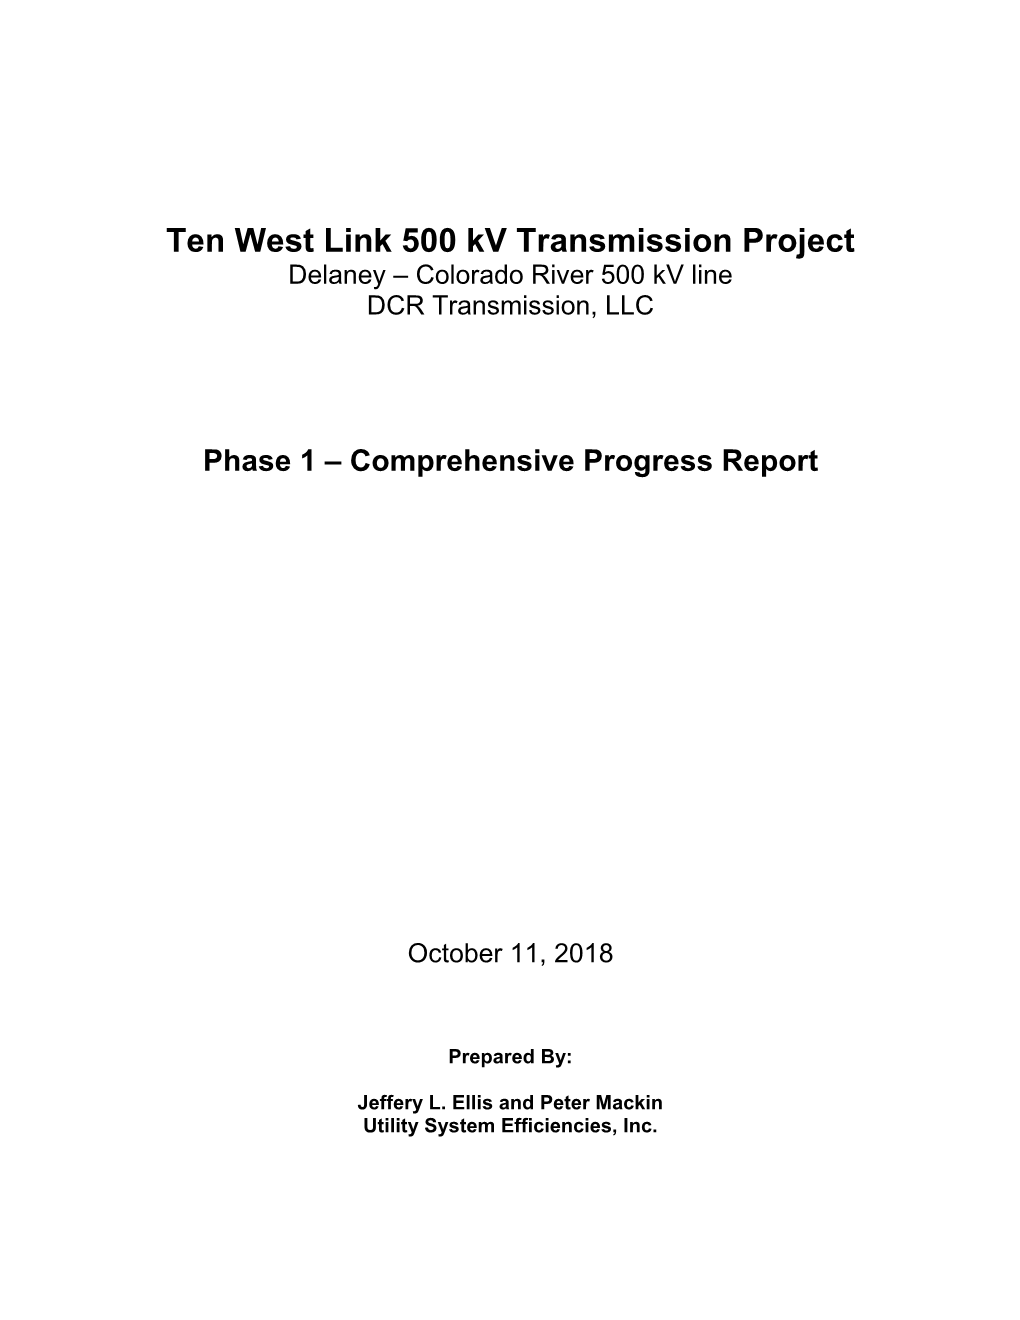 Ten West Link 500 Kv Transmission Project Delaney – Colorado River 500 Kv Line DCR Transmission, LLC